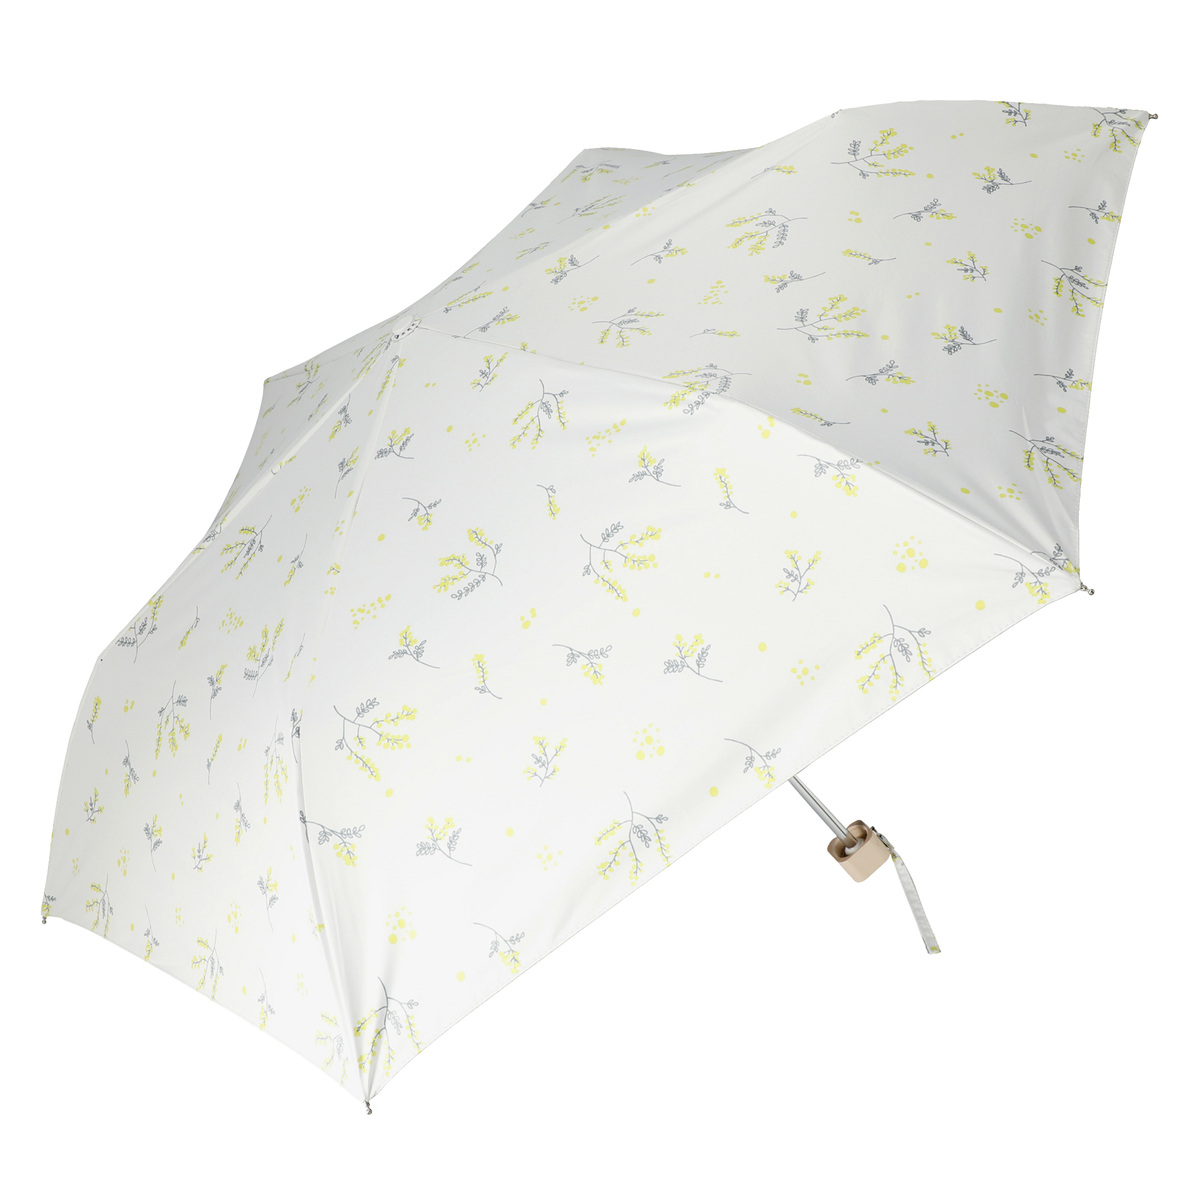  ルナジュメール UV+1級遮光+晴雨兼用 プリント 折傘  ミモザ柄オフホワイト